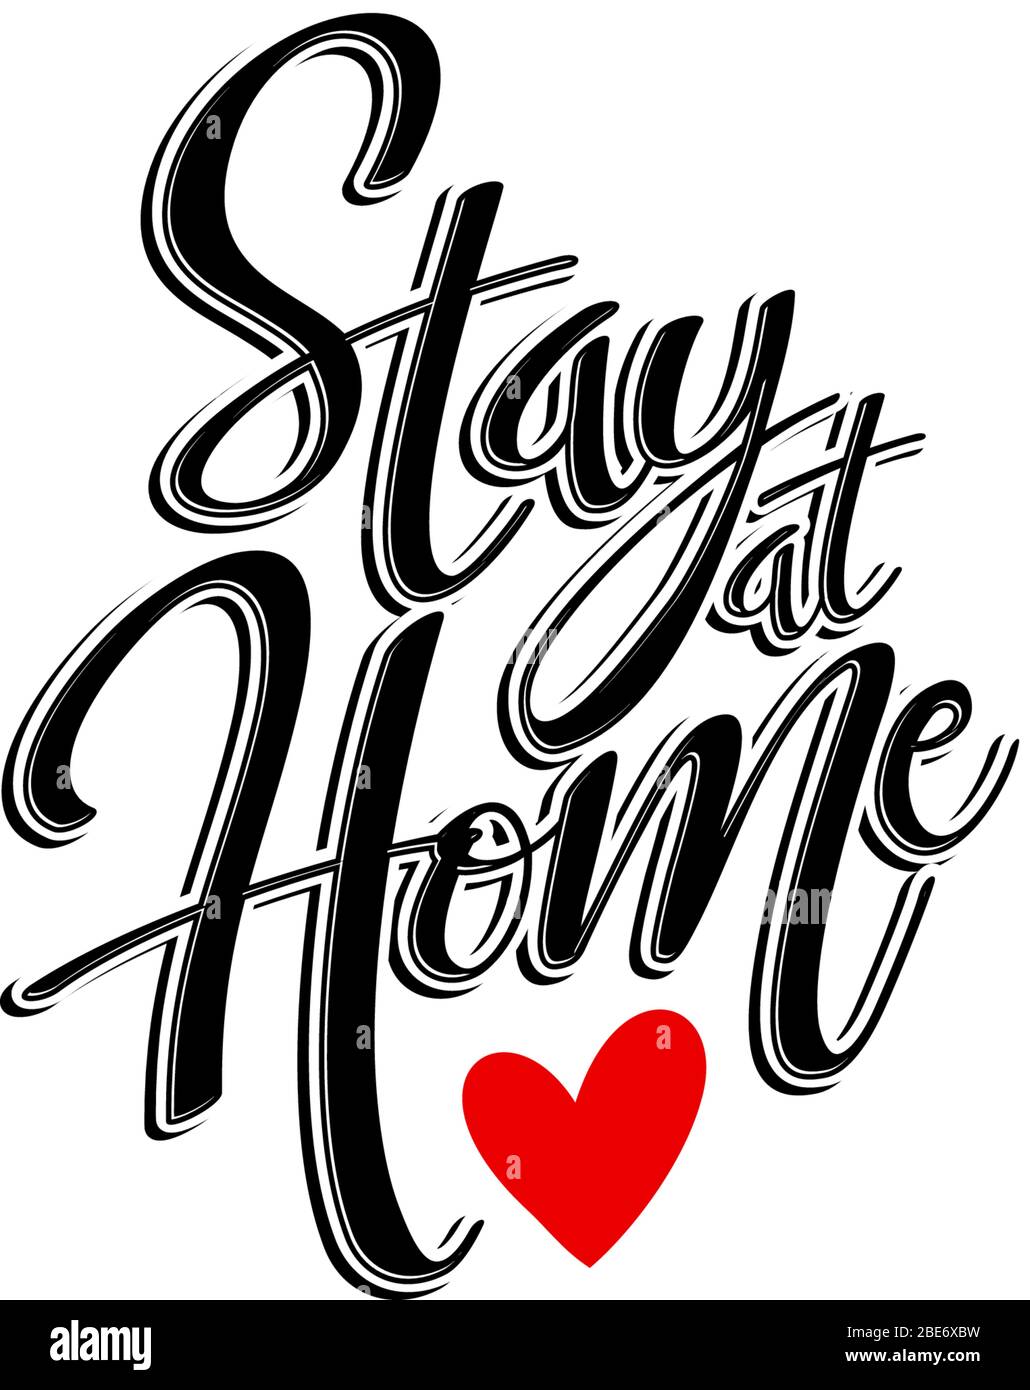 Stay at Home Zitat in schwarz mit rotem Herz. Isoliert auf weißem Hintergrund. Soziale Distanzierungskampagne während der vierzeiligen Coronavirus-Pandemie Stock Vektor